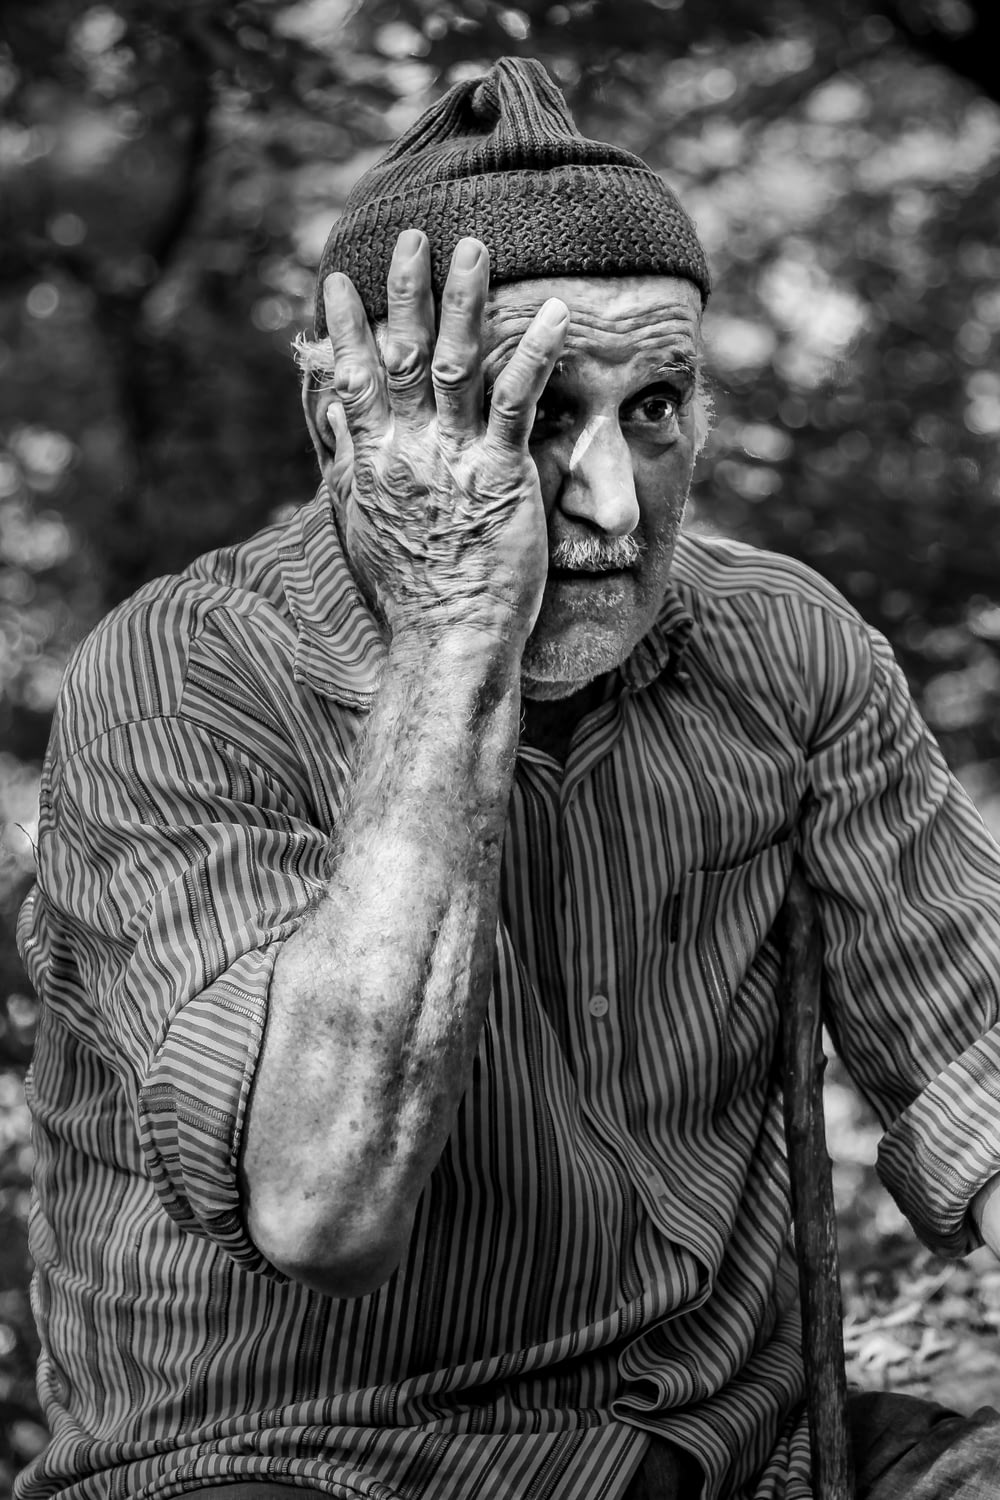 Mann im langärmeligen Nadelstreifenhemd legt Hand aufs Gesicht